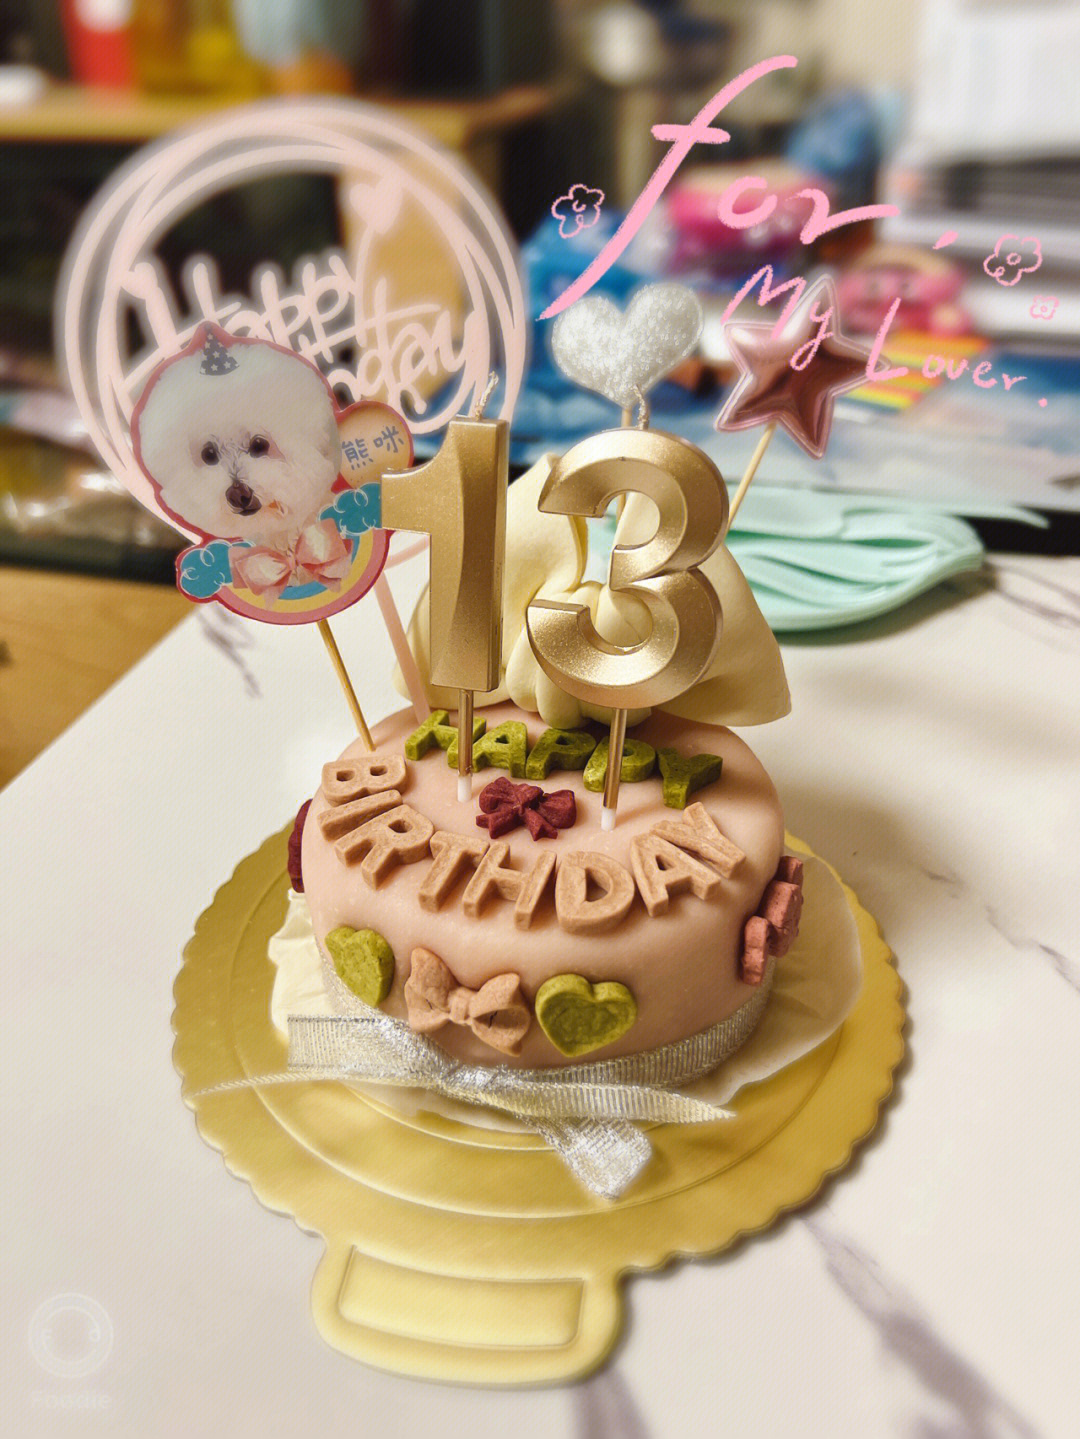 十三岁生日蛋糕女孩图片